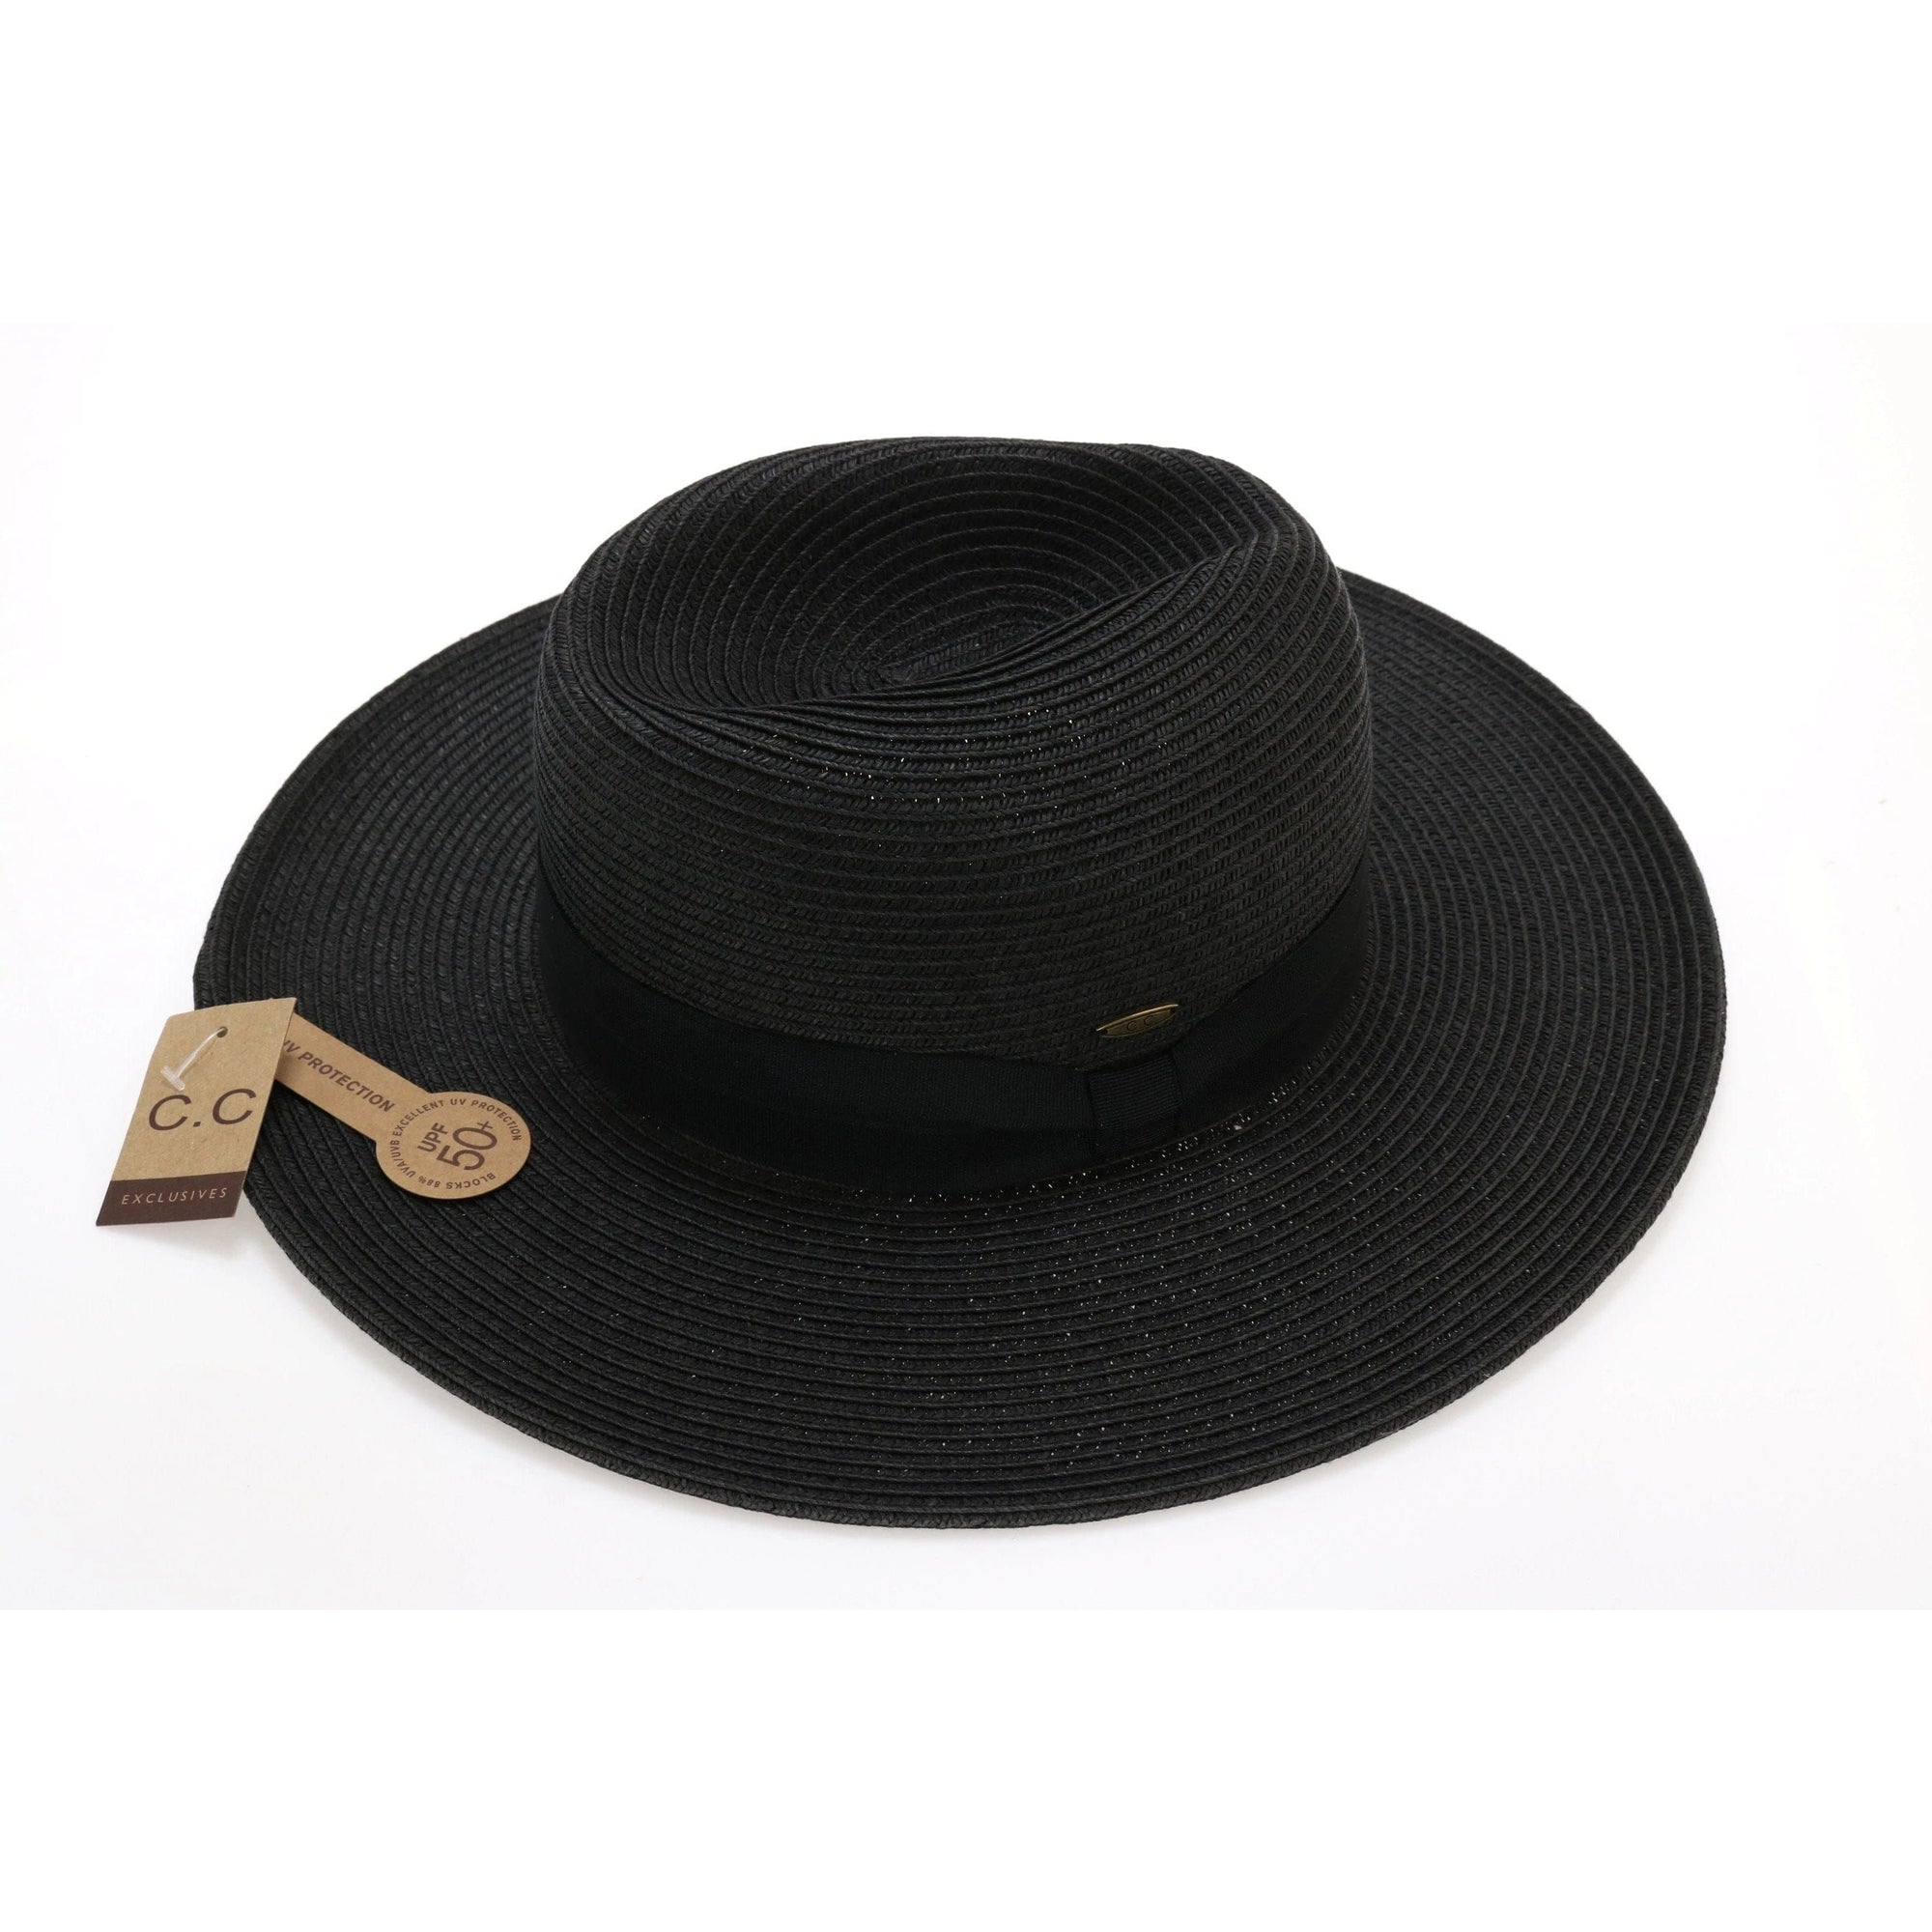 CC Beanies BLACK / OS CC Beanie Panama Ribbon Hat